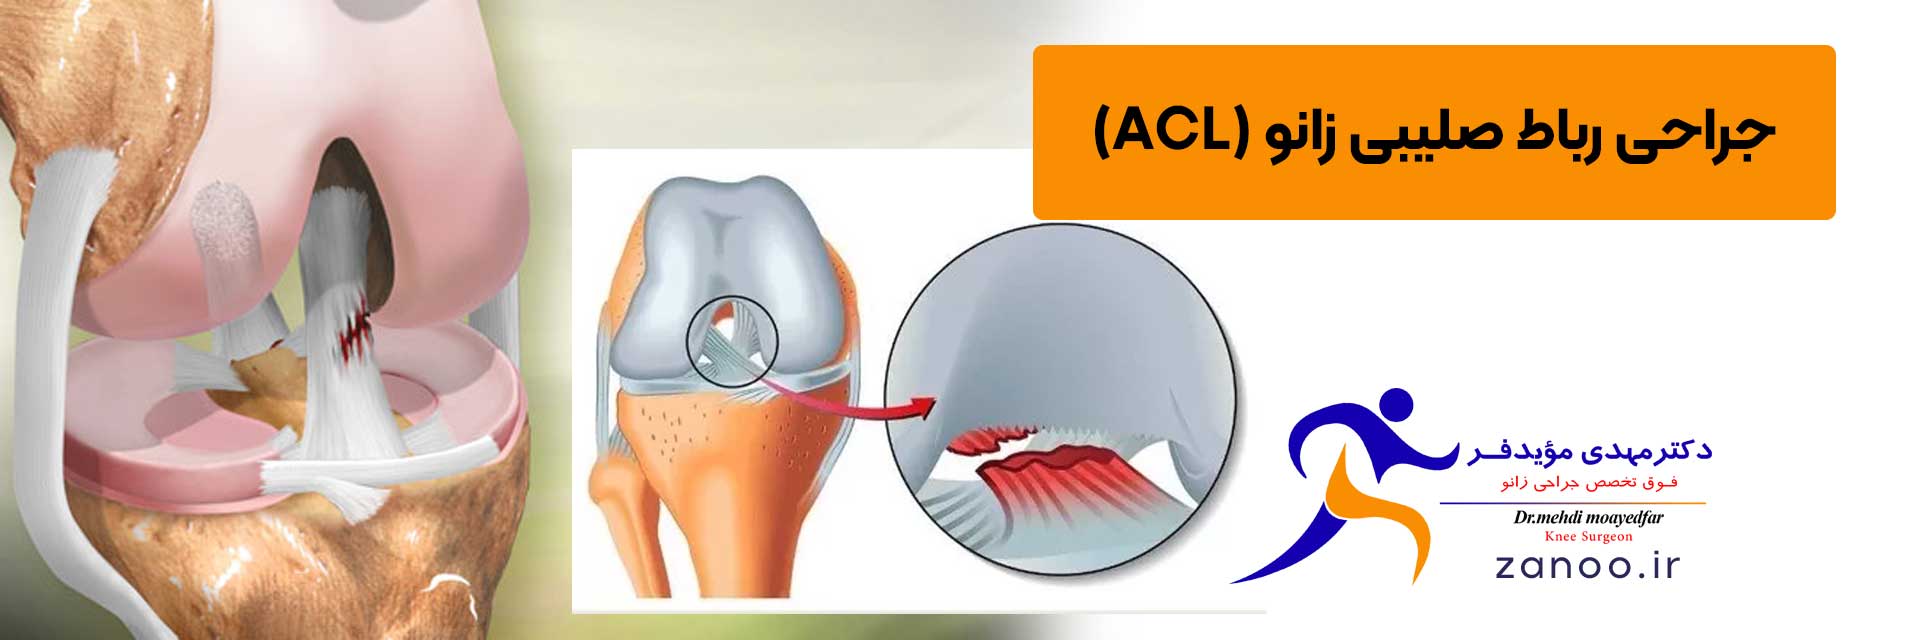 راه-های-تشخیص-آسیب-ACL